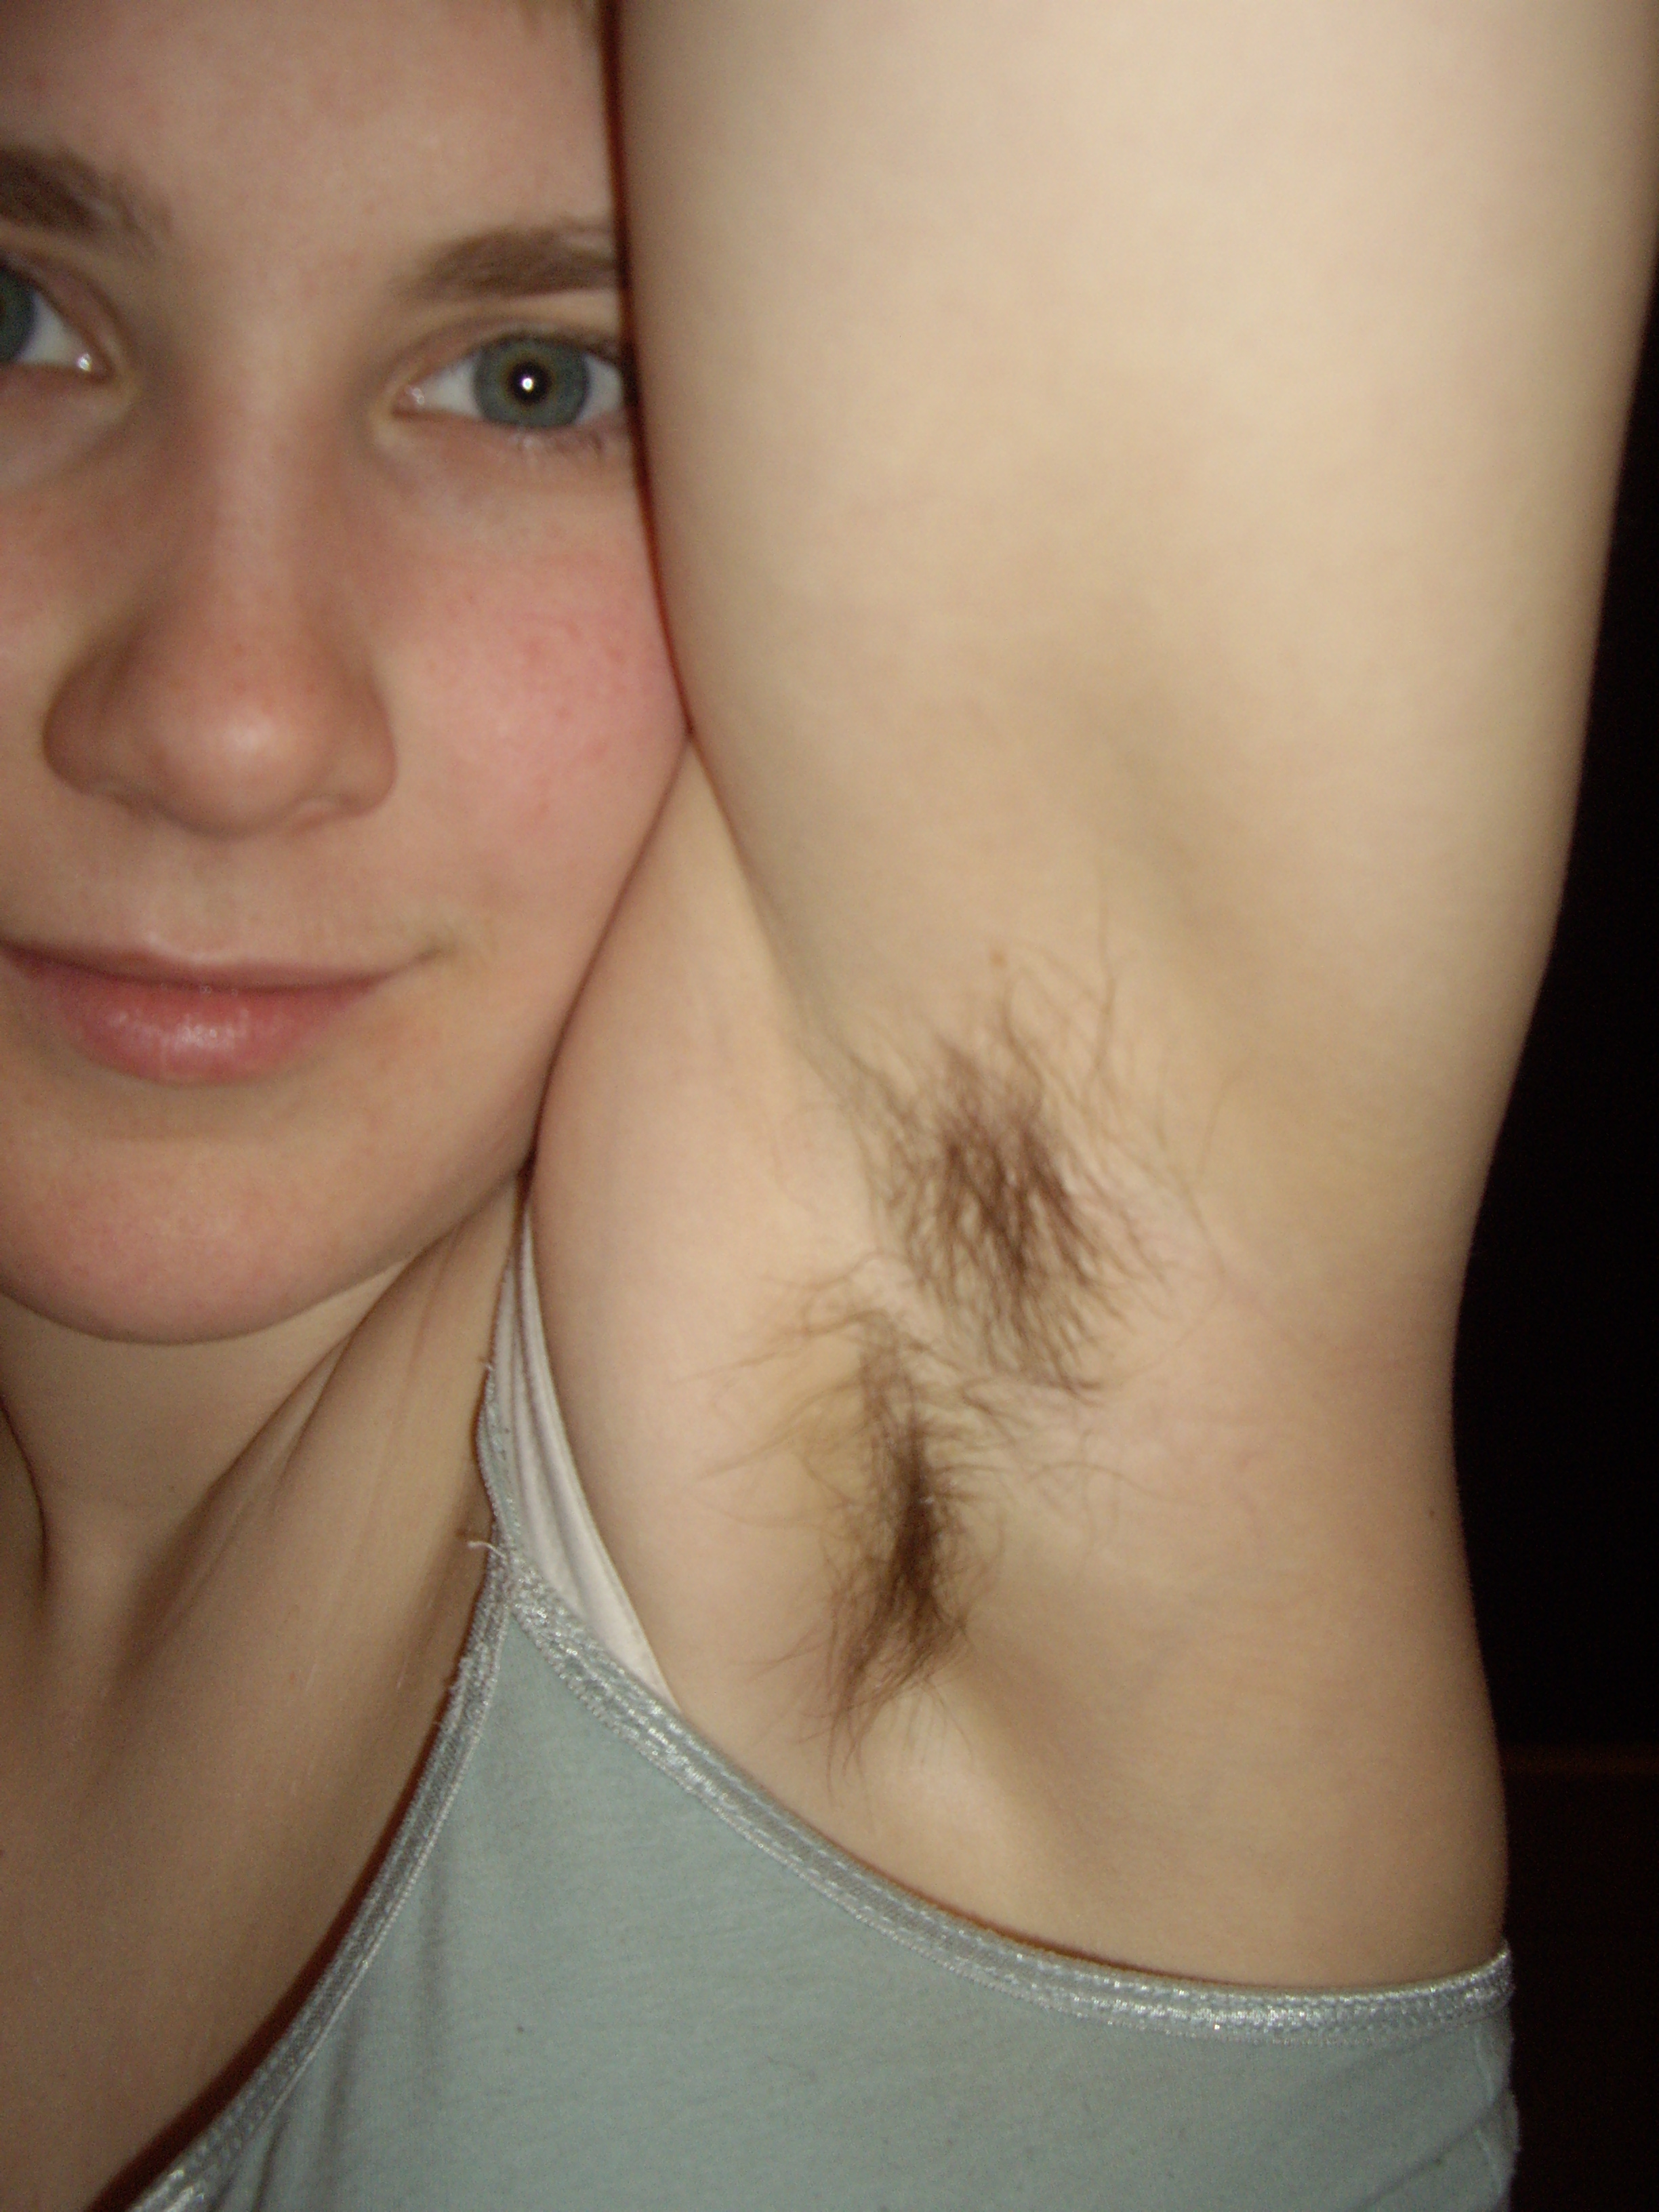 armaan sahoo add photo hairy armpit teen girl